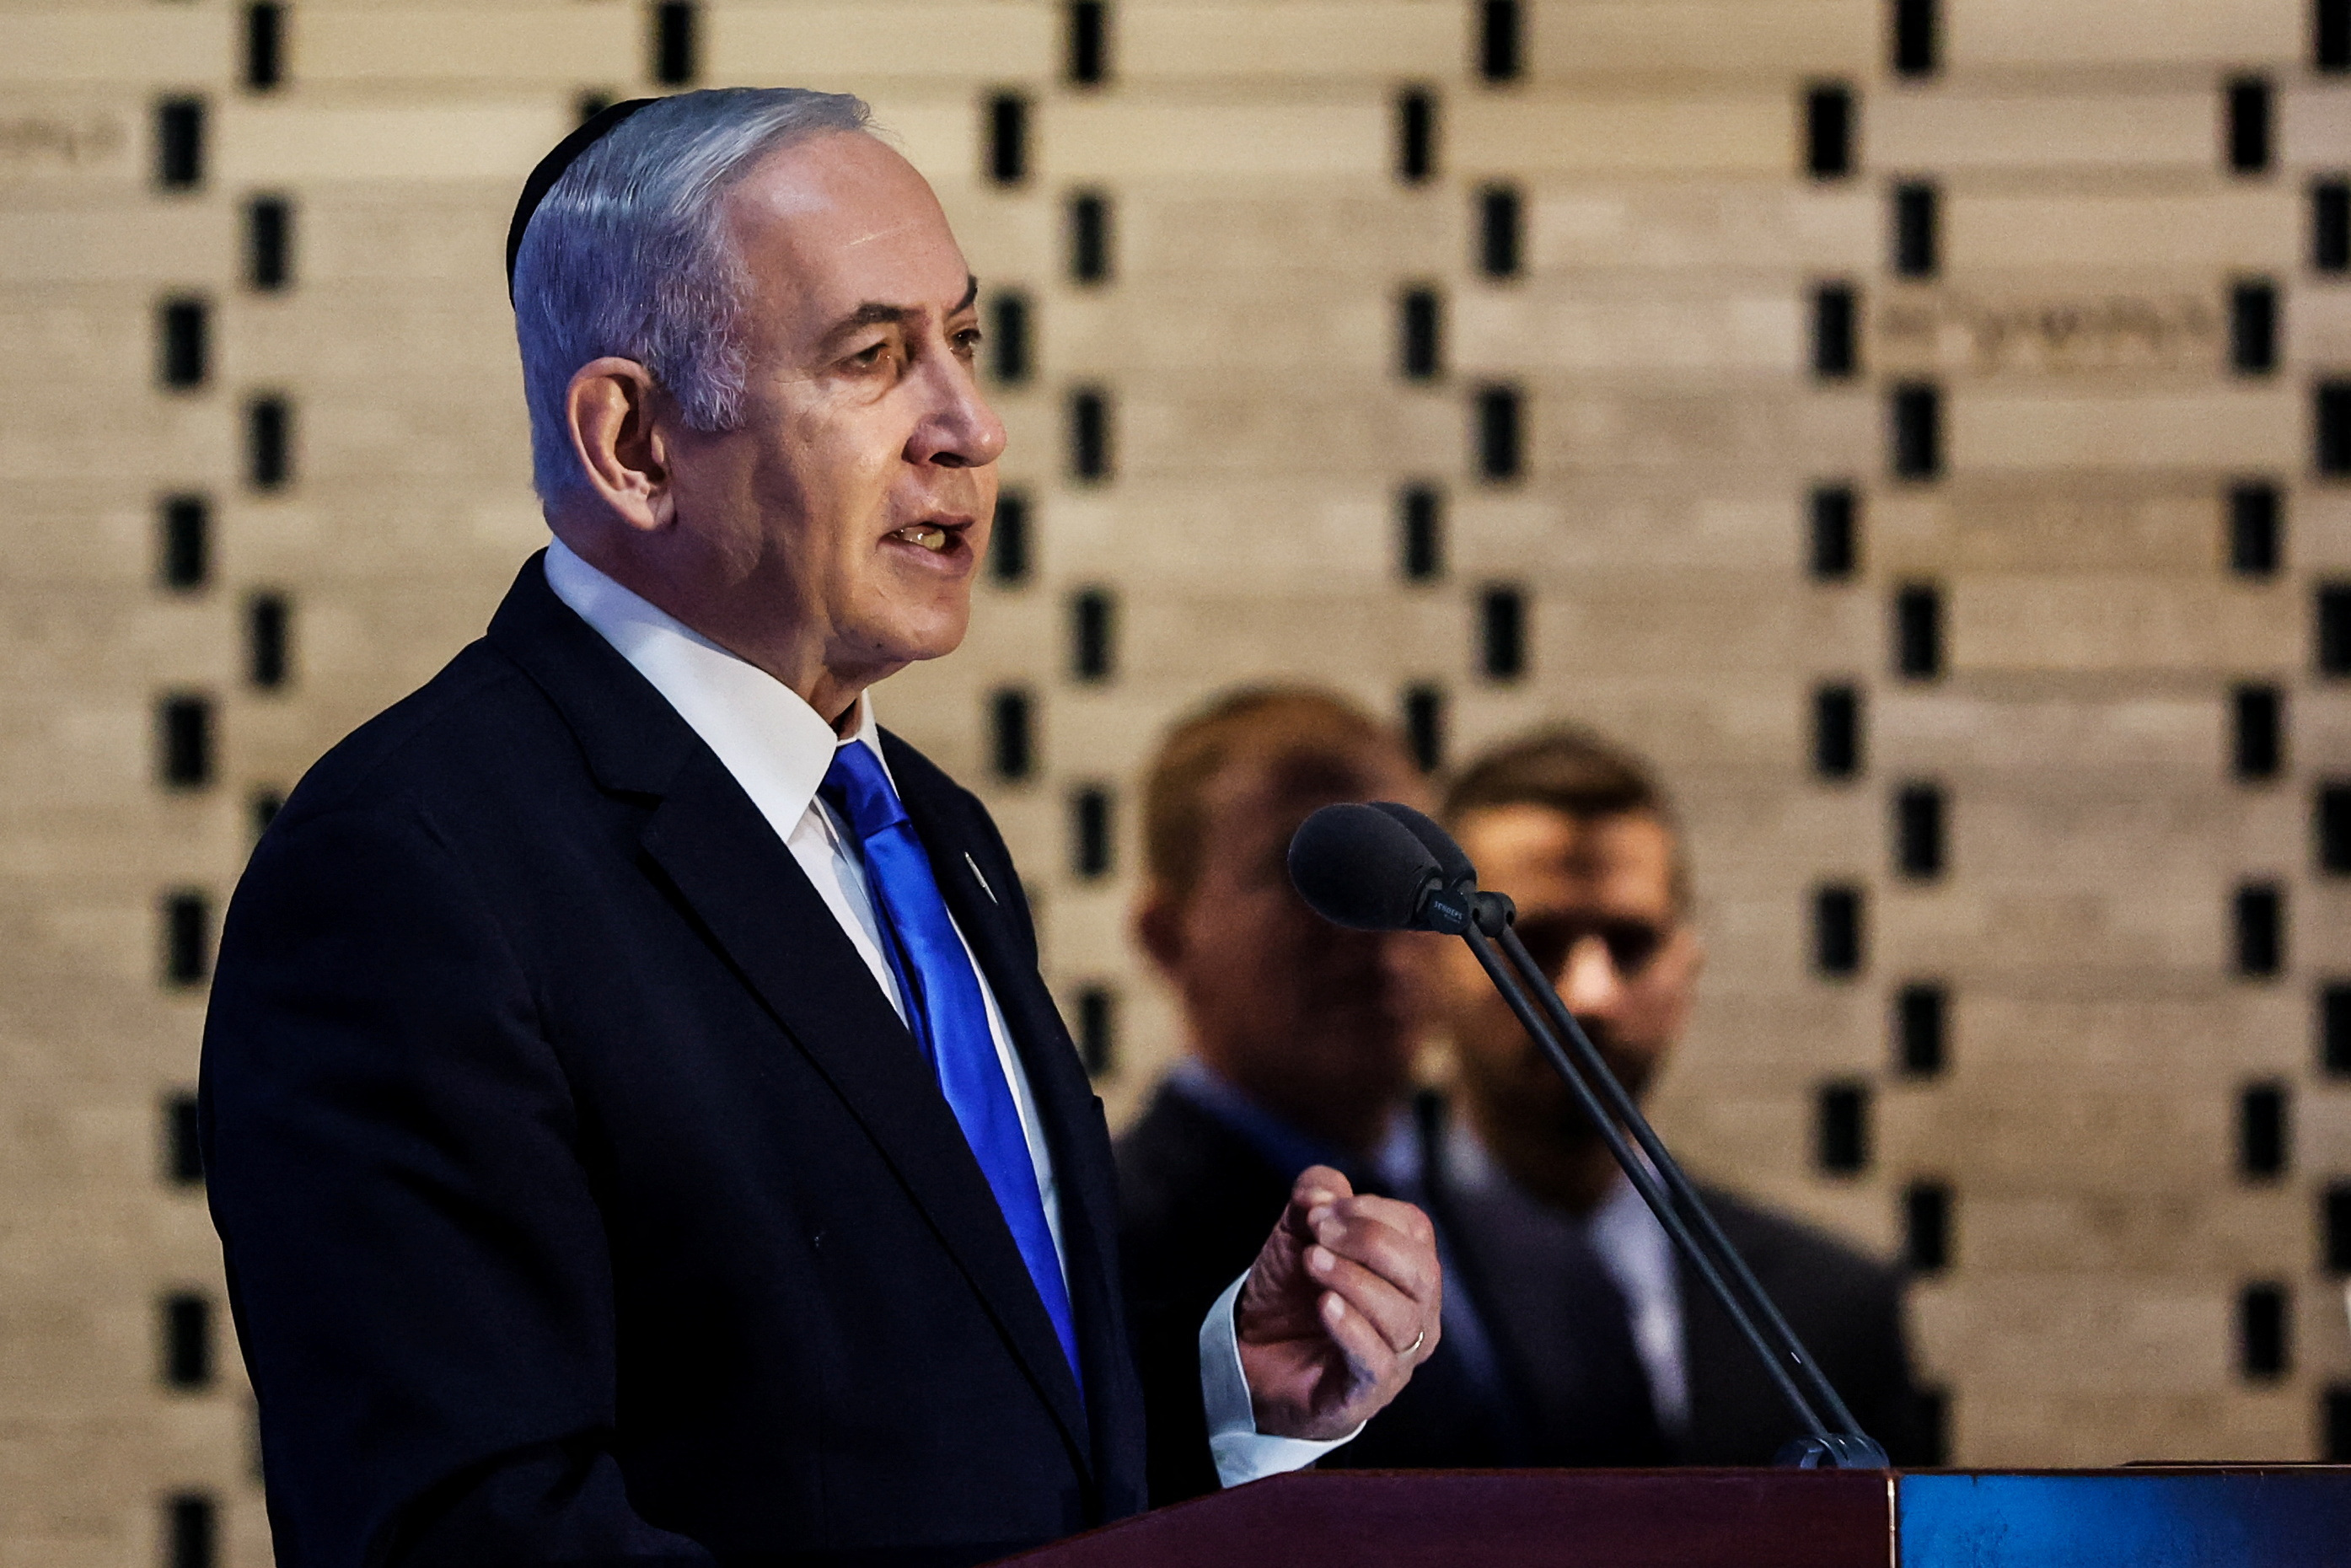 イスラエル、ガザへの地上侵攻を準備＝ネタニヤフ首相 - ロイター (Reuters Japan)